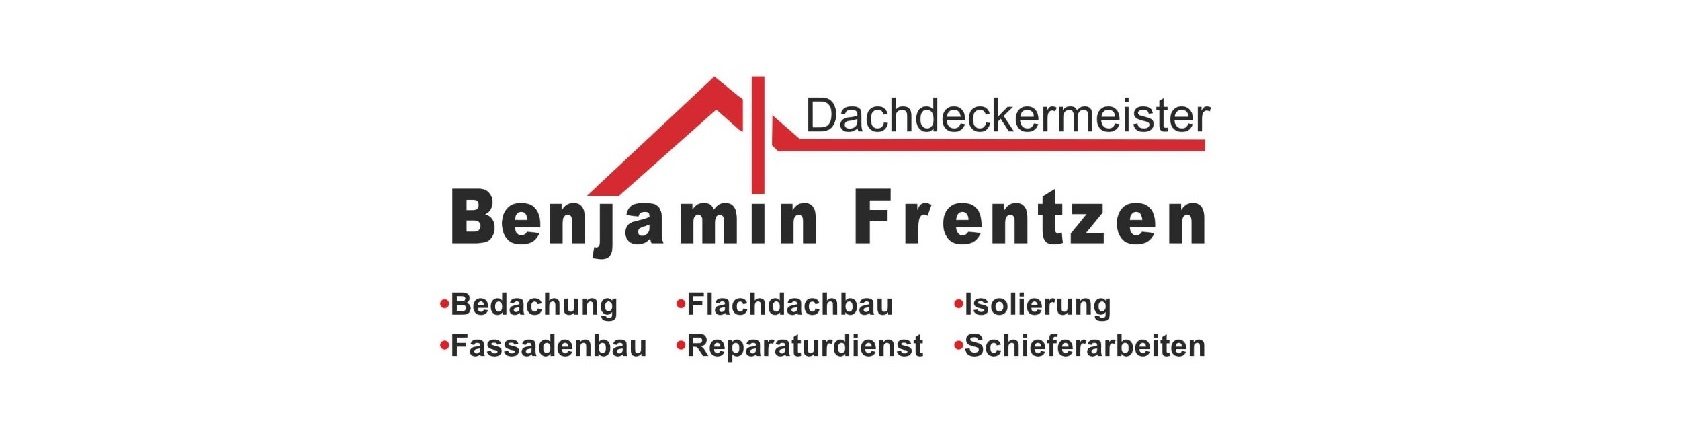 Partner Dachdeckermeister Frentzen